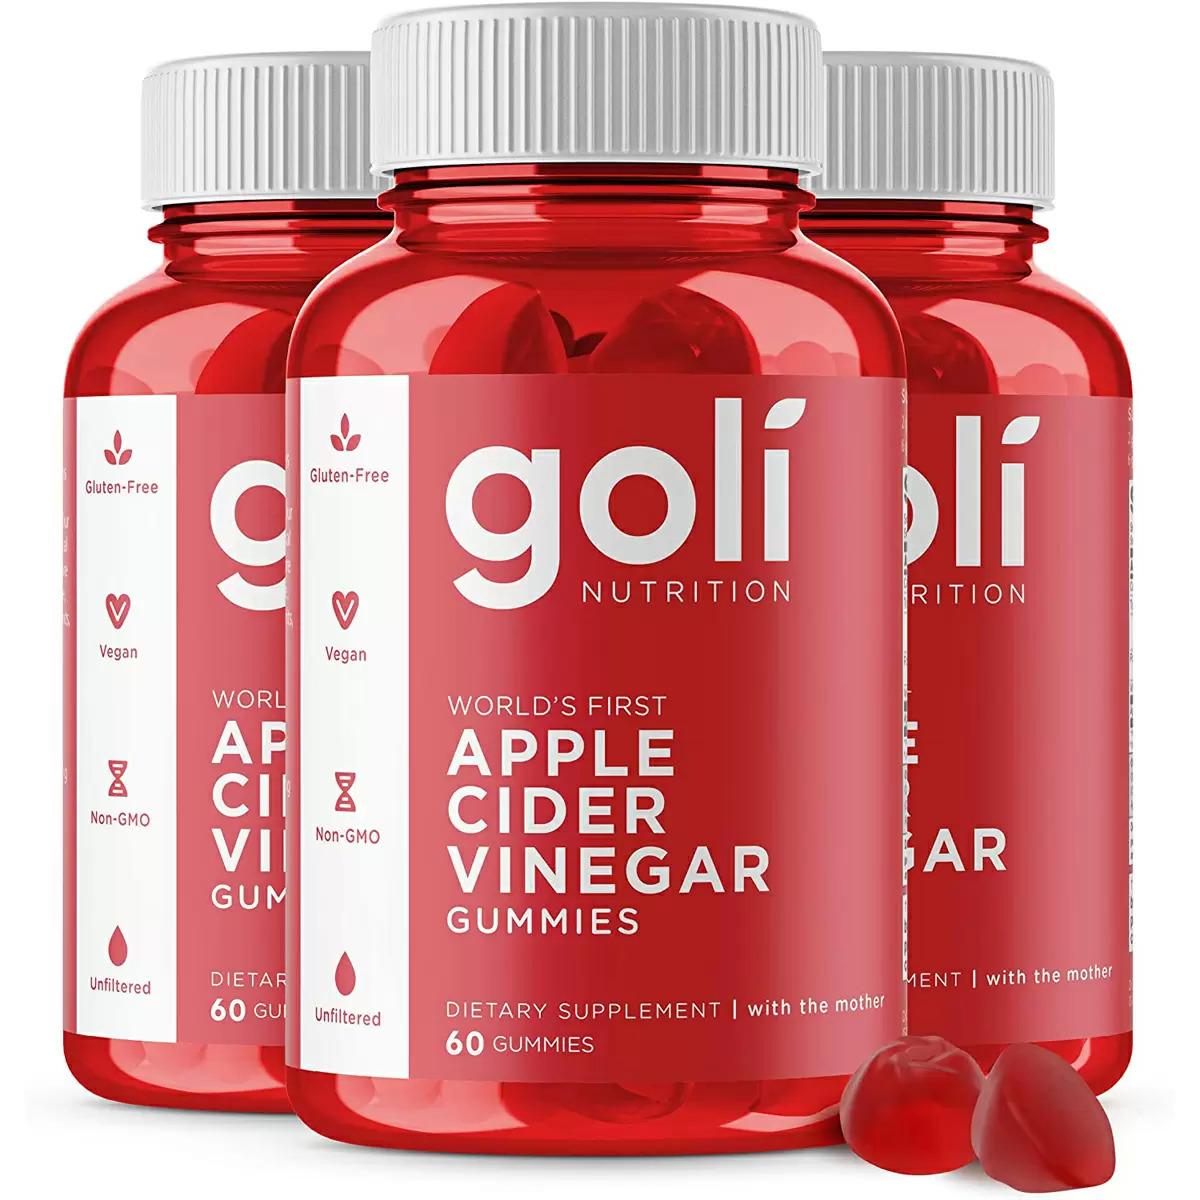 3 Apple Cider Vinegar Gummy Vitamins by Goli for $34.65 Shipped